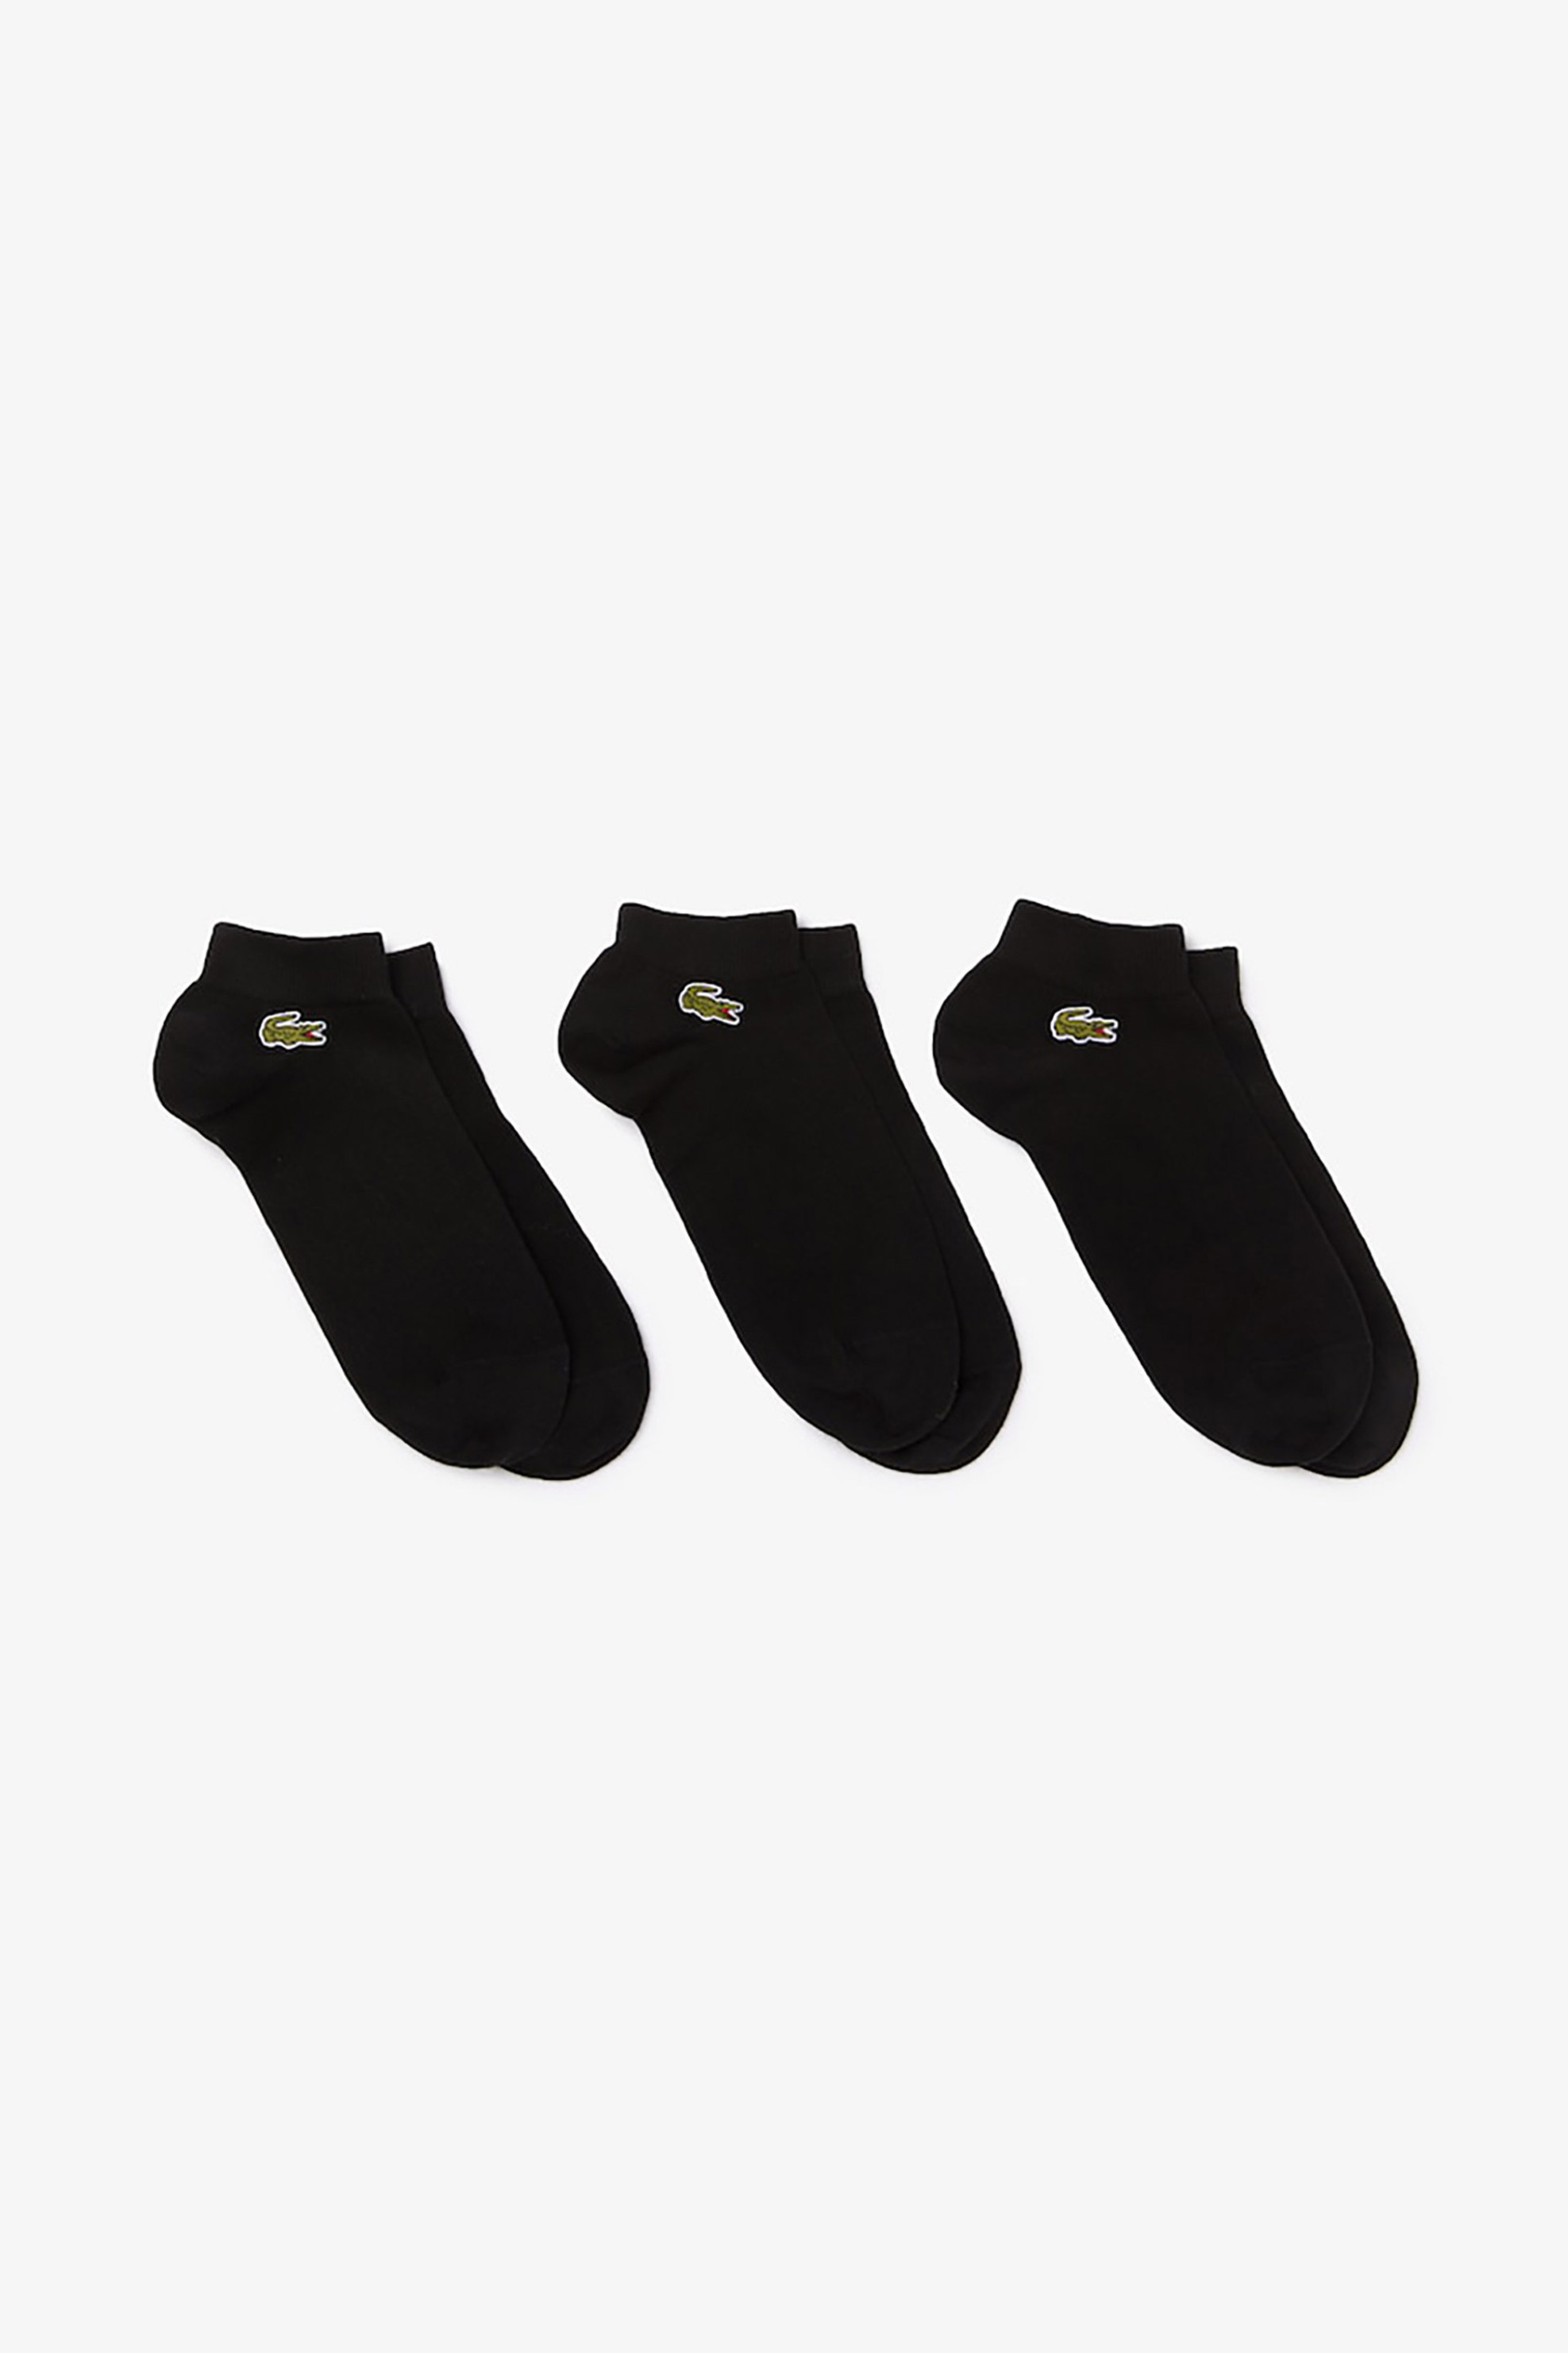 Ανδρική Μόδα > Ανδρικά Ρούχα > Ανδρικές Κάλτσες > Ανδρικές Κάλτσες Κοντές Lacoste unisex σετ κάλτσες με κεντημένο λογότυπο "Sport Low-Cut" (3 τεμάχια) - RA4183 Μαύρο